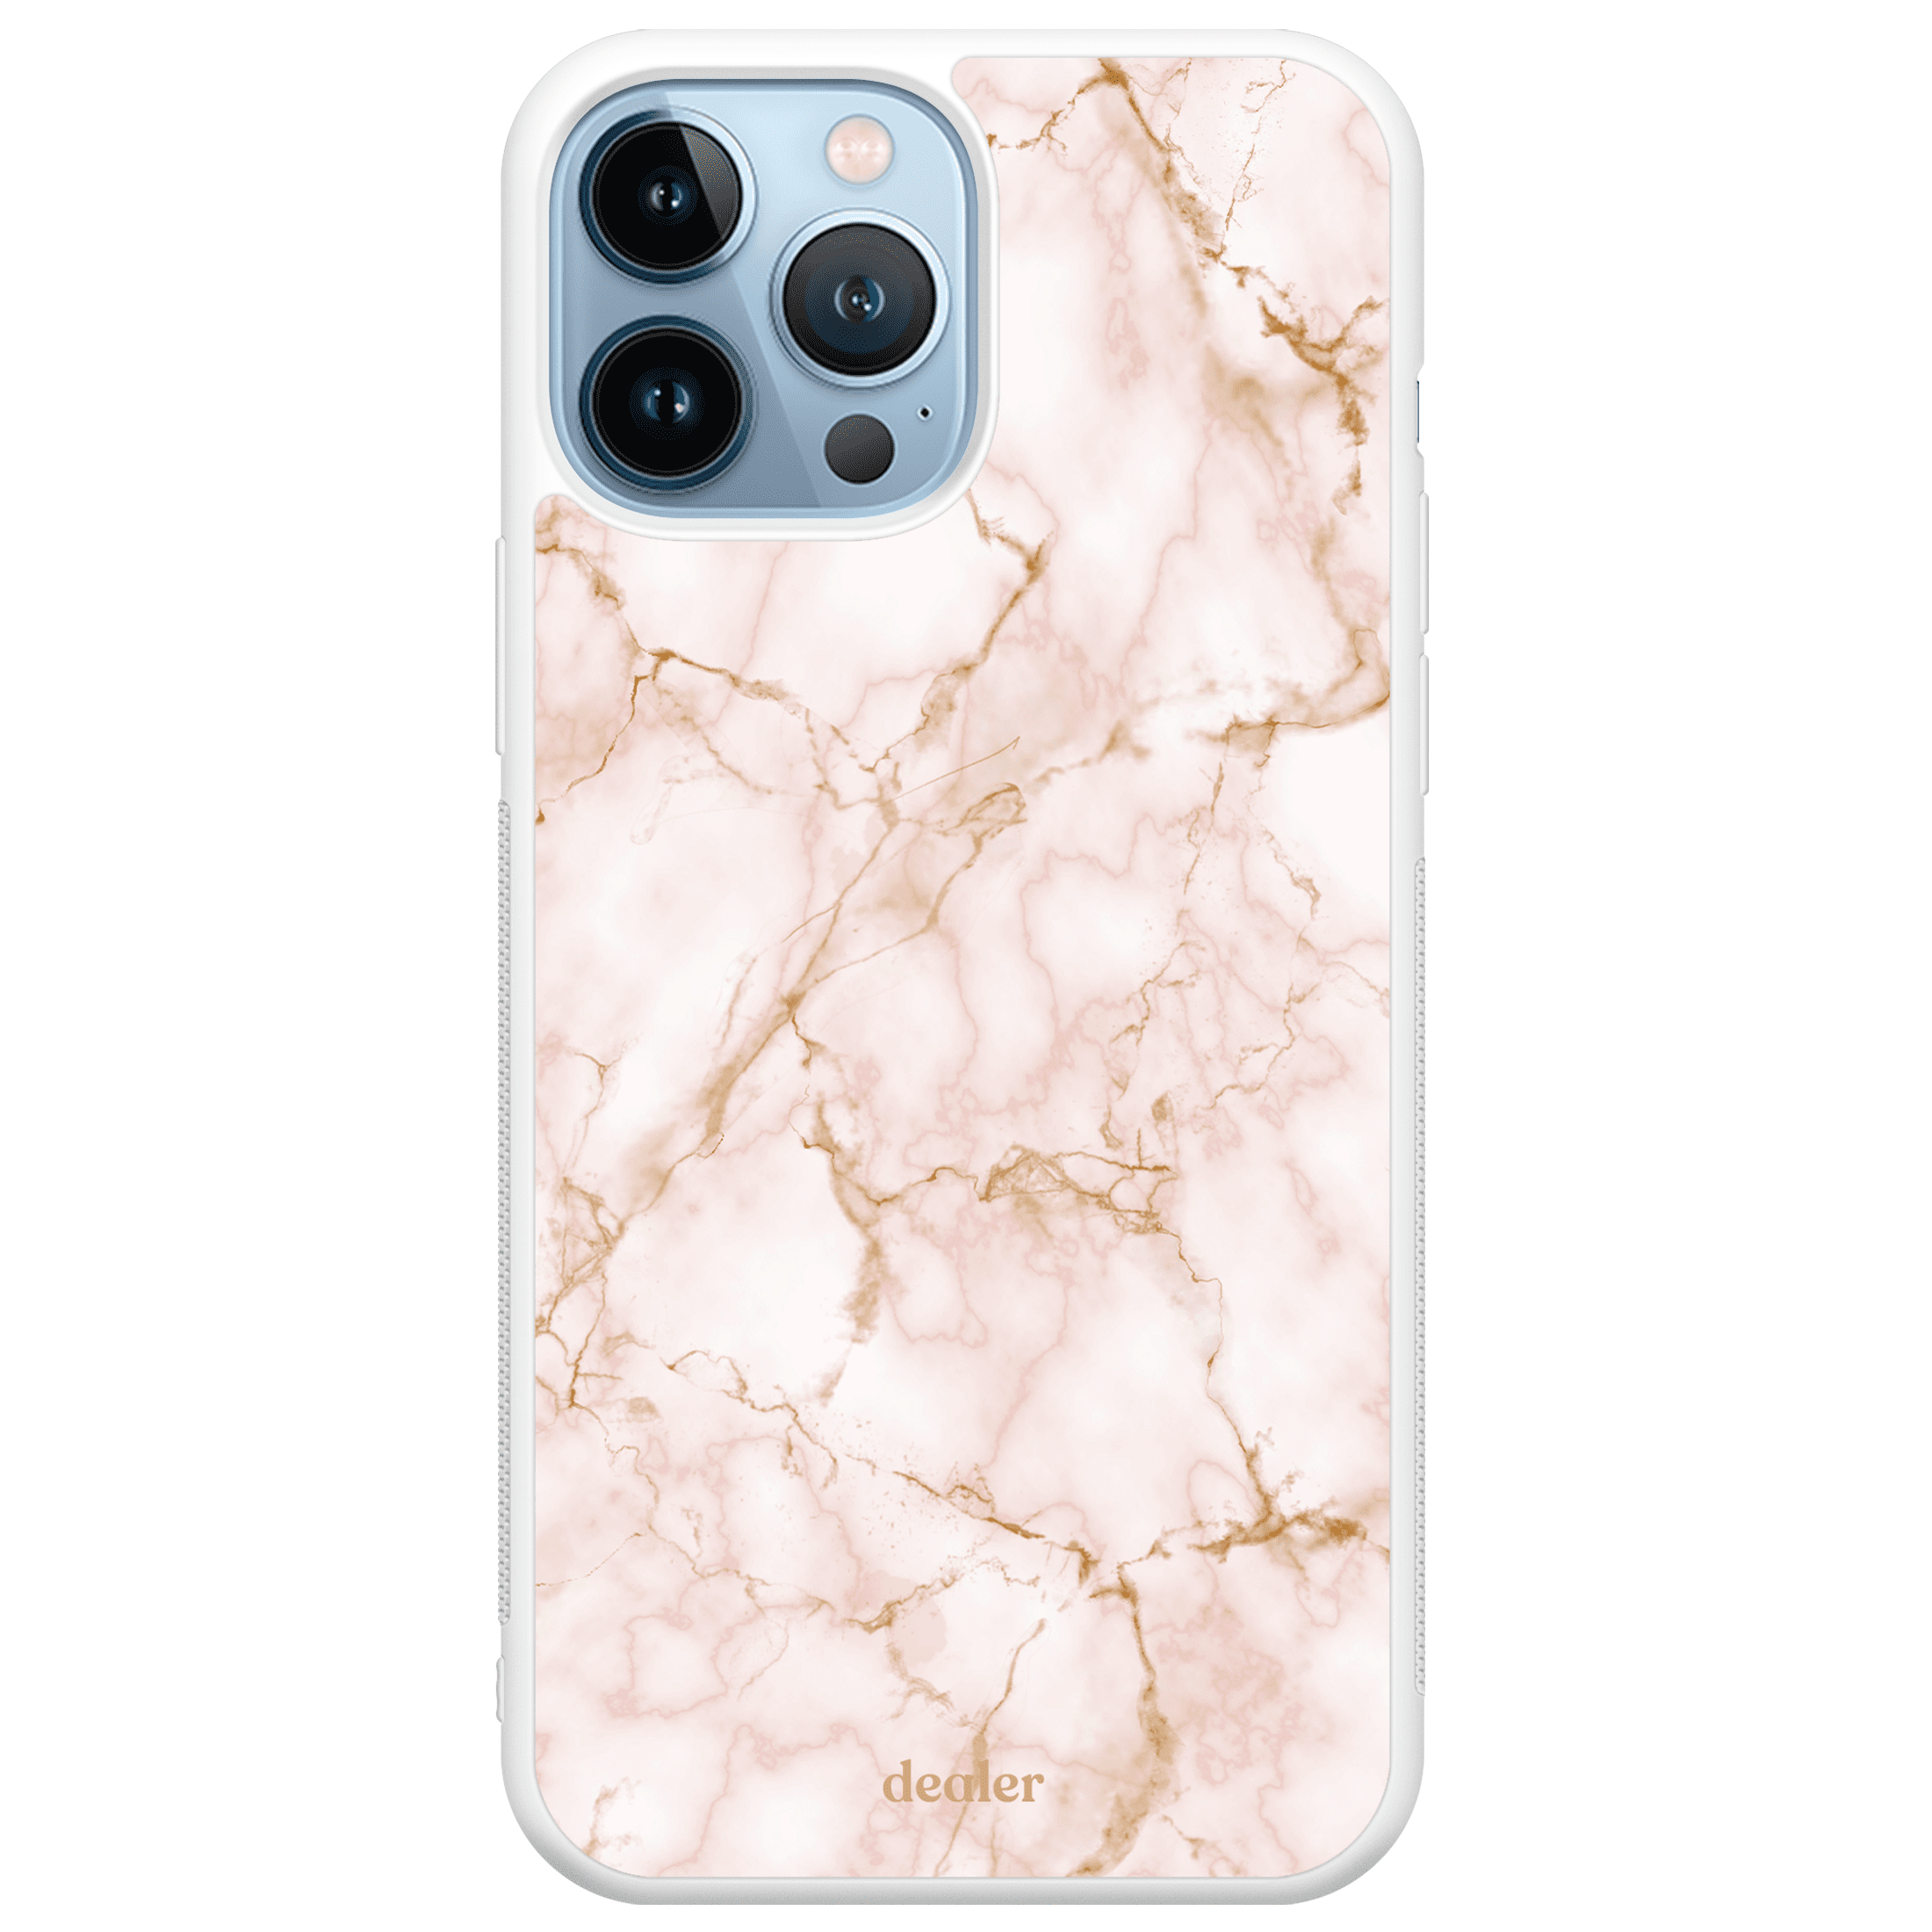 Coque de téléphone avec un motif de marbre rose et blanc, modèle Marbre blanc rosé en silicone renforcé de chez Dealer de coque